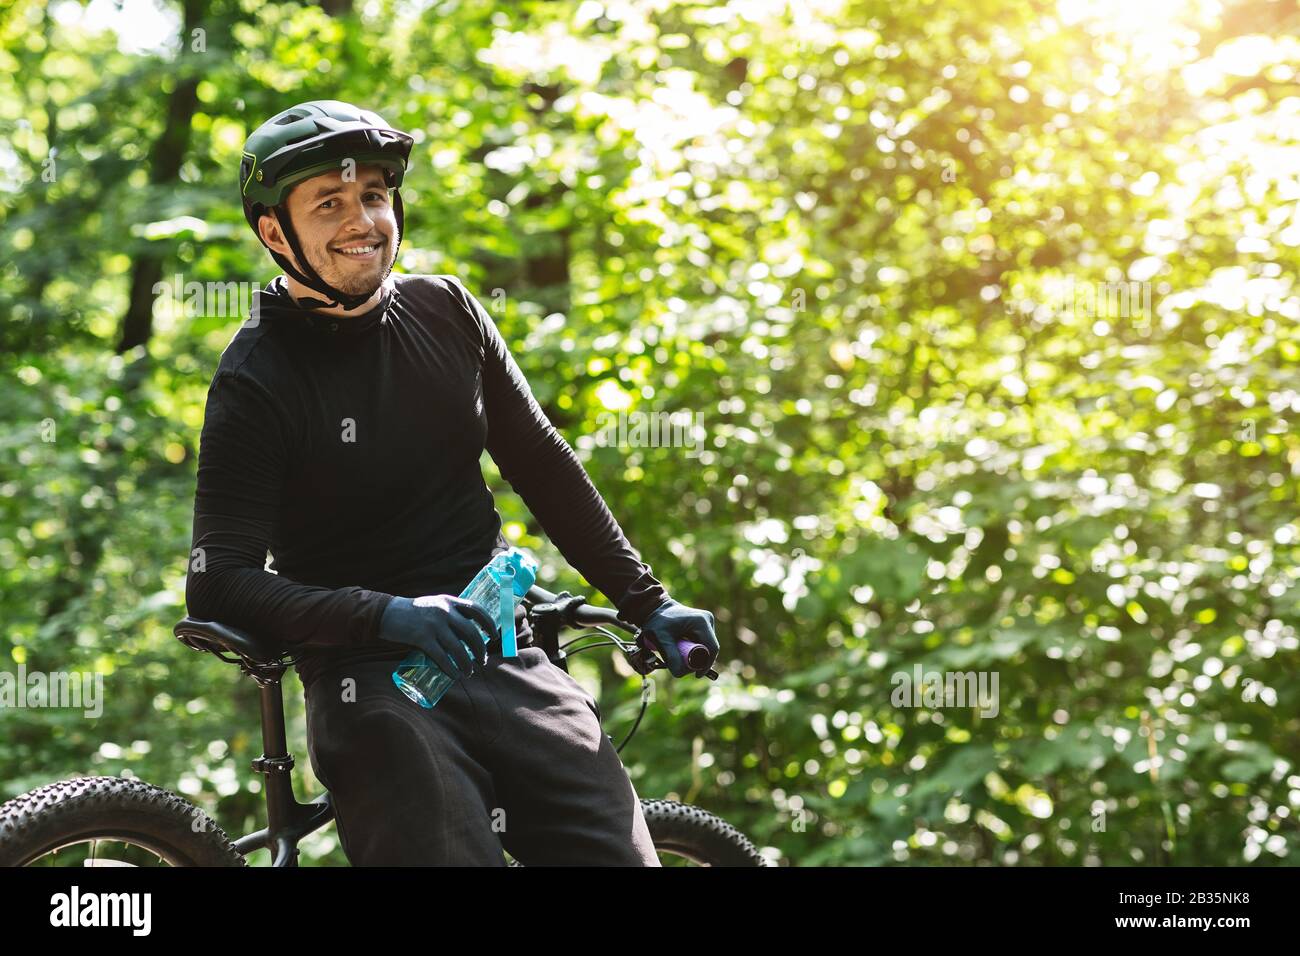 Fröhlicher Radfahrer, der eine Flasche Wasser hält und mit der Kamera lächelt Stockfoto